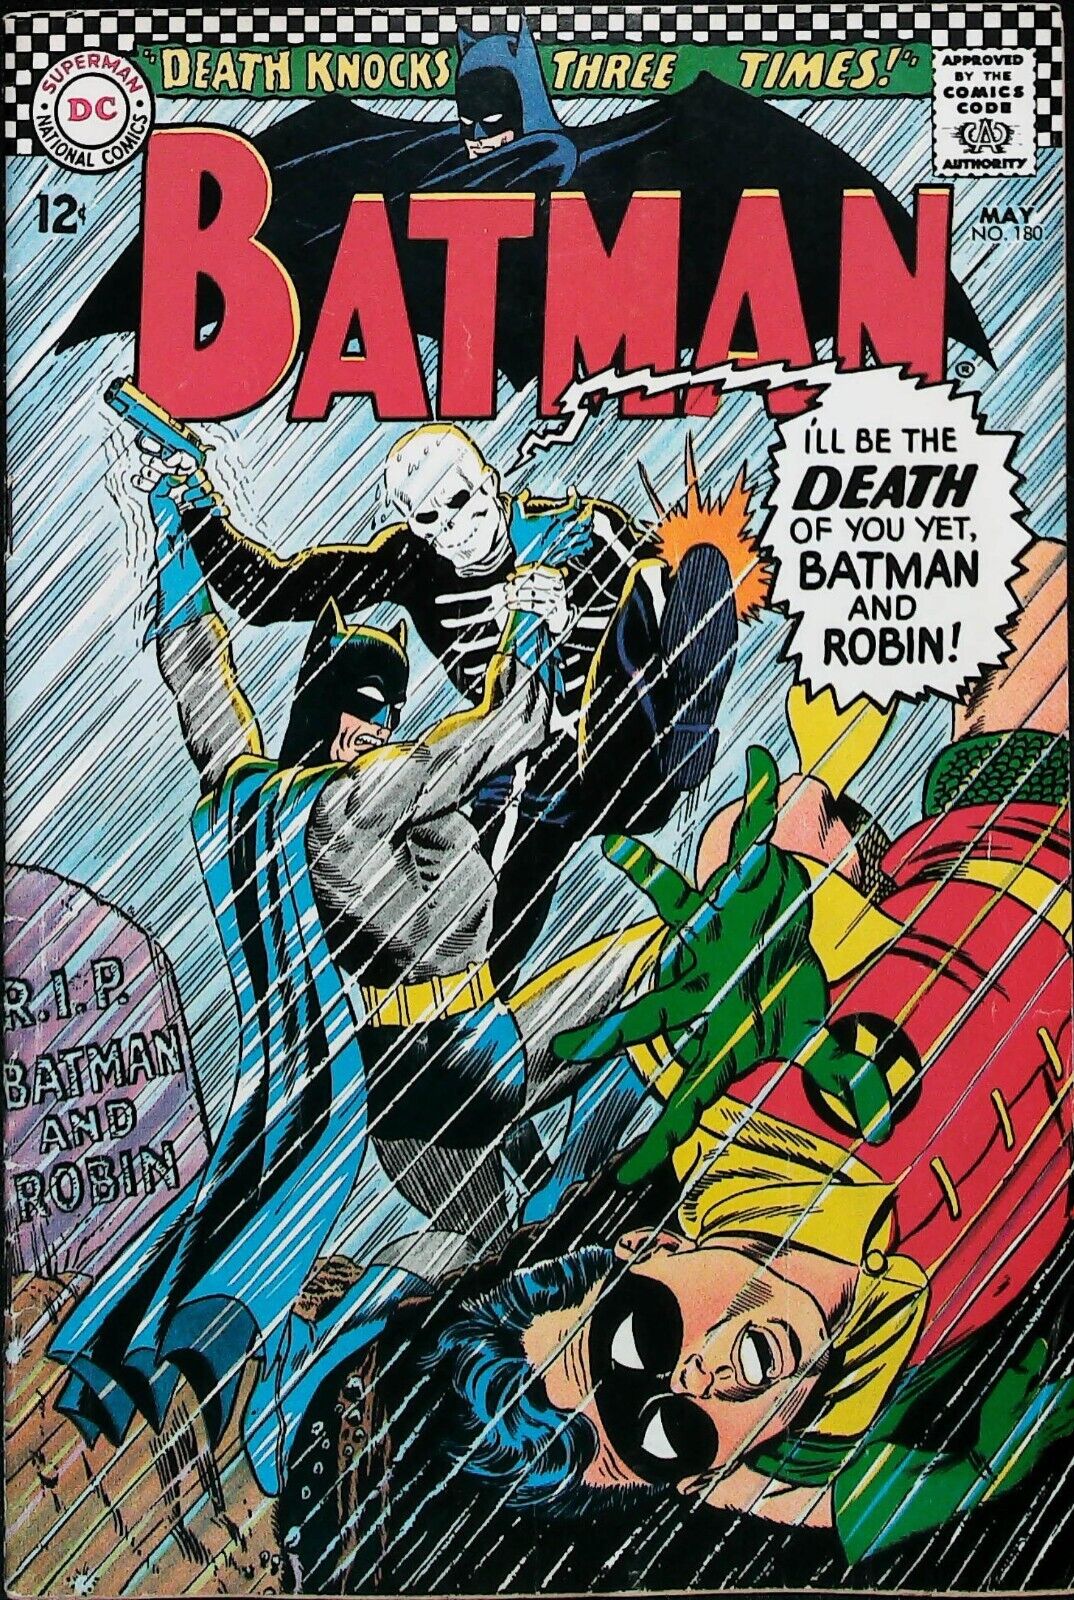 Batman #180 Vol 1 (1966) KEY *1st App Of Death-Man* - Mid Grade